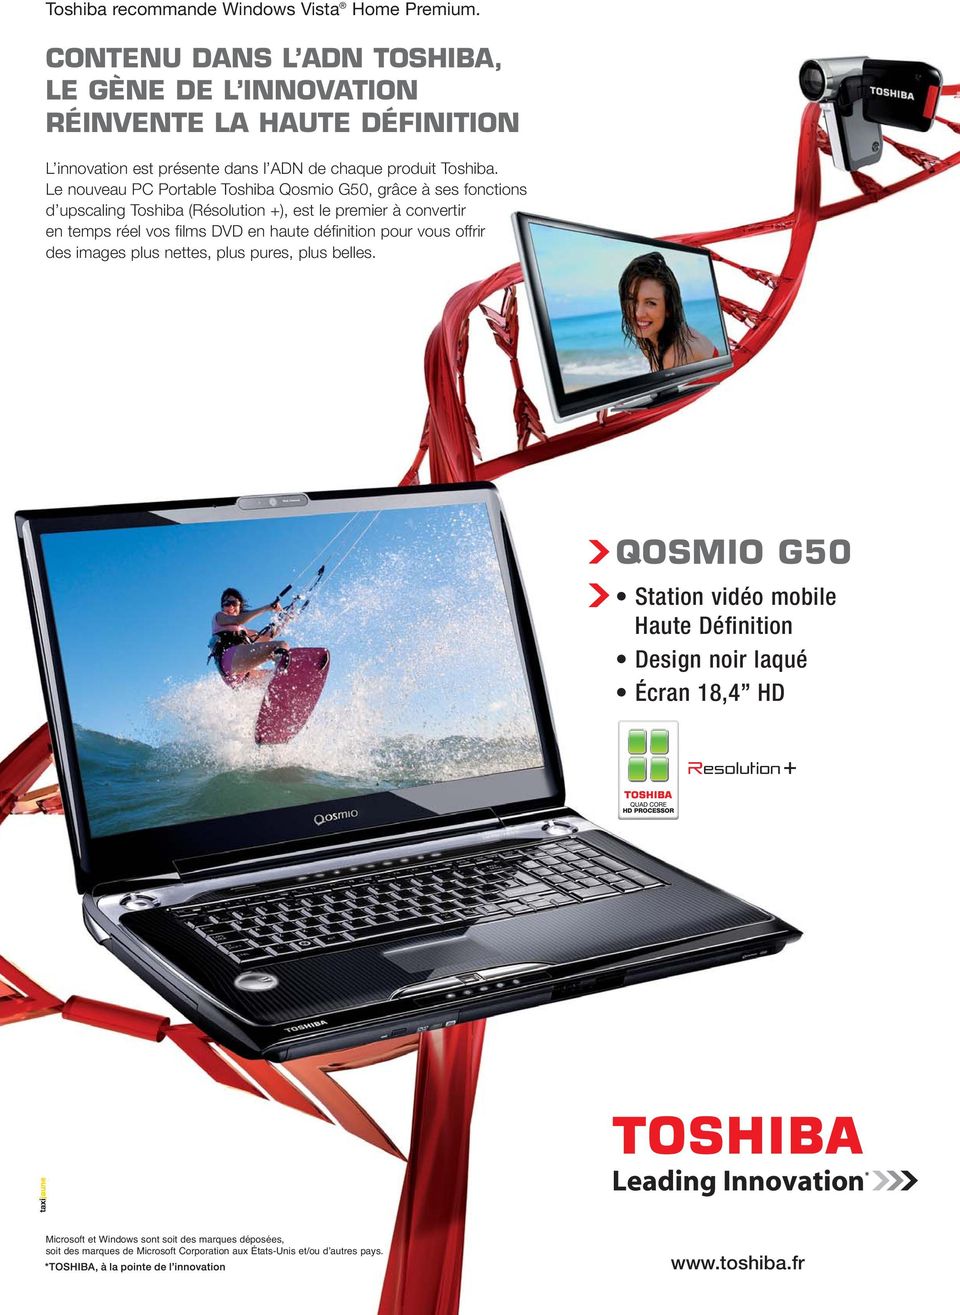 Le nouveau PC Portable Toshiba Qosmio G50, grâce à ses fonctions d upscaling Toshiba (Résolution +), est le premier à convertir en temps réel vos films DVD en haute